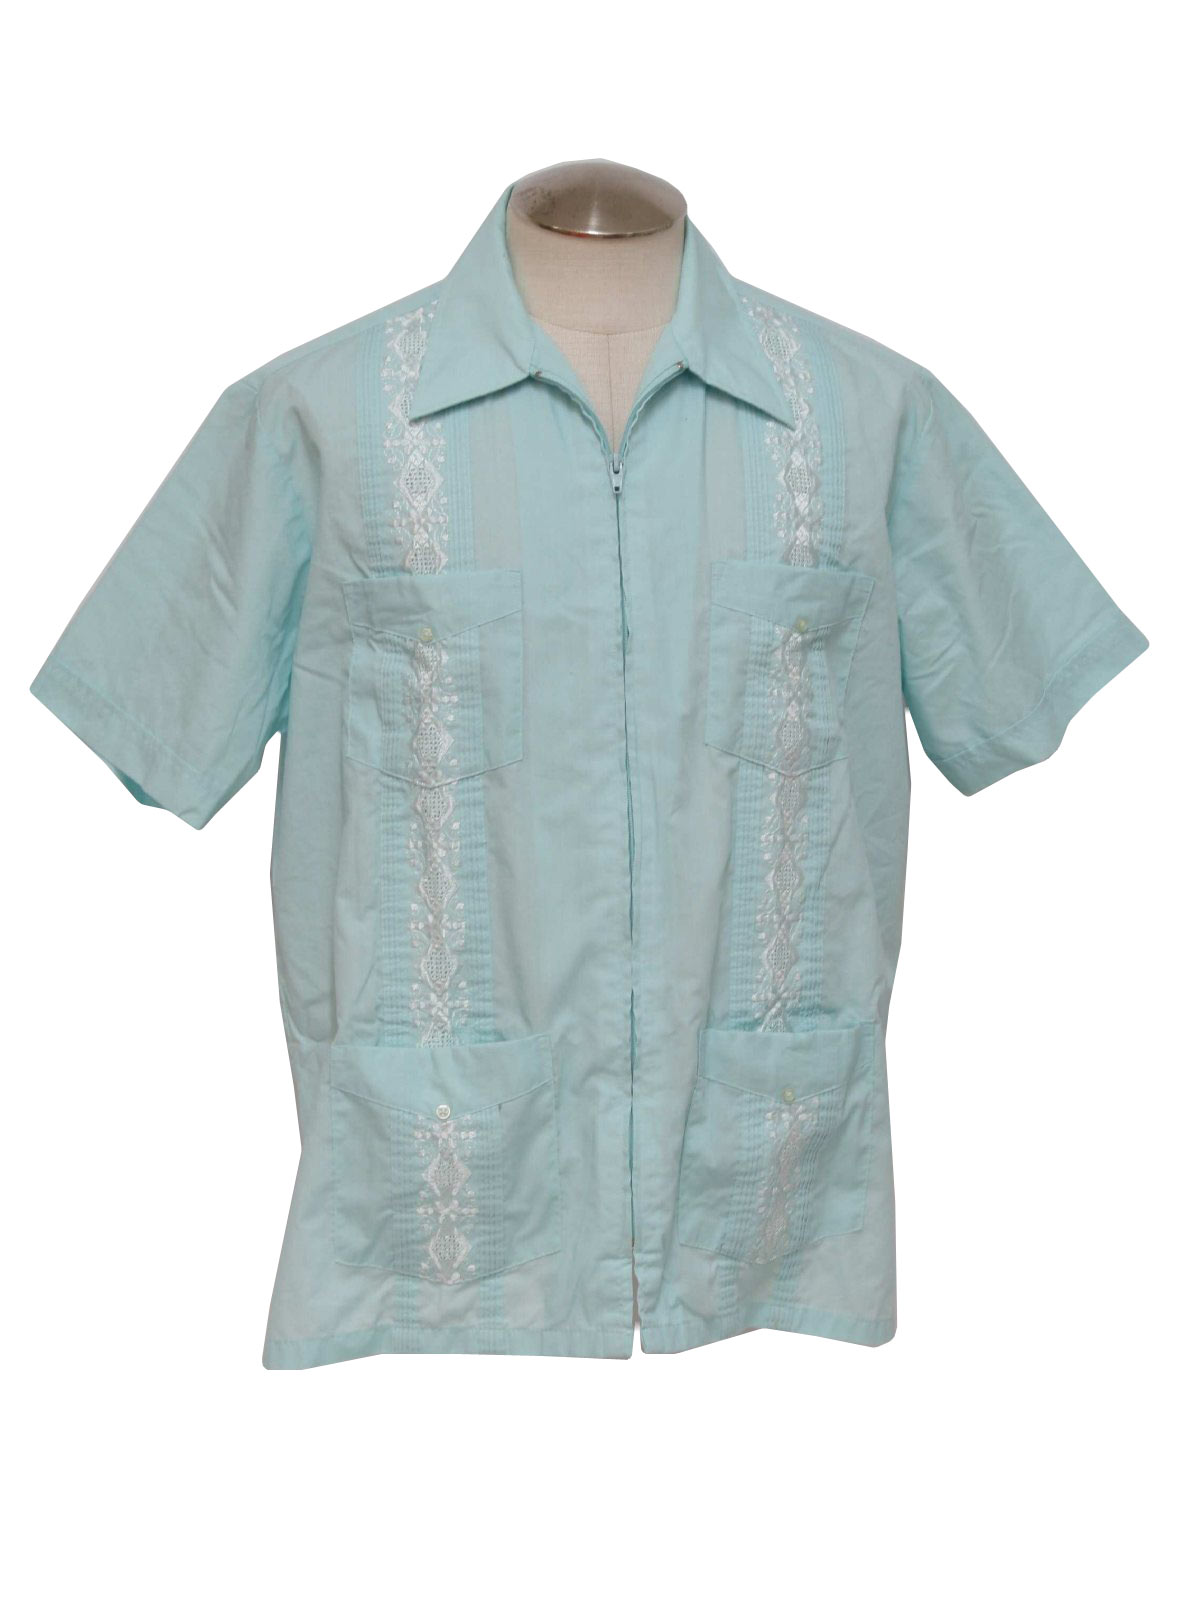 Vintage Haband 80's Guayabera Shirt: 80s -Haband- Mens bright aqua ...